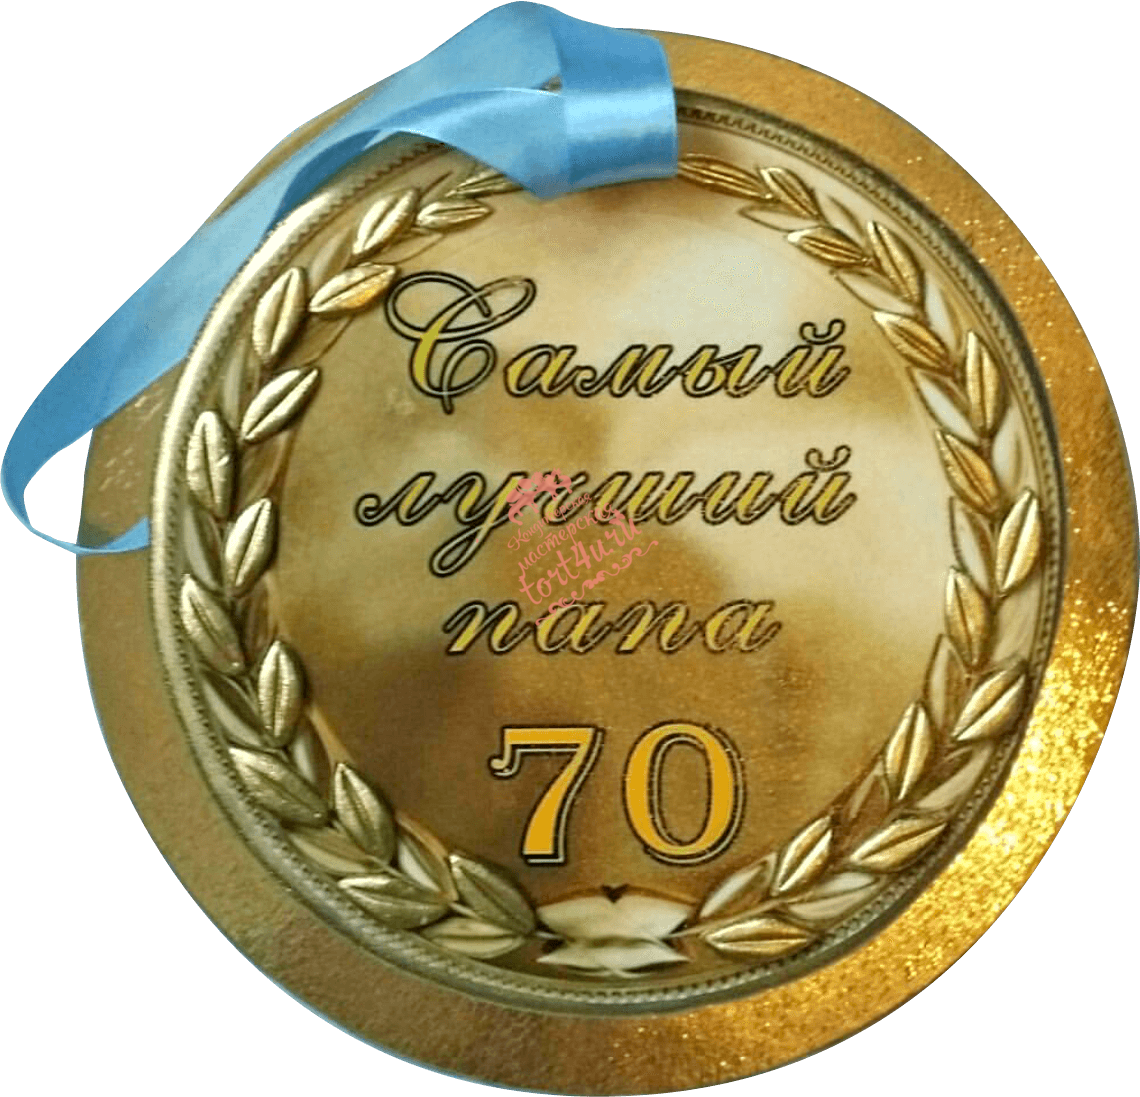 С днем рождения папе 70. Торт медаль. Медаль "с юбилеем 70 лет". Торт медаль на юбилей мужчине. Медаль на юбилей дедушке 70 лет.